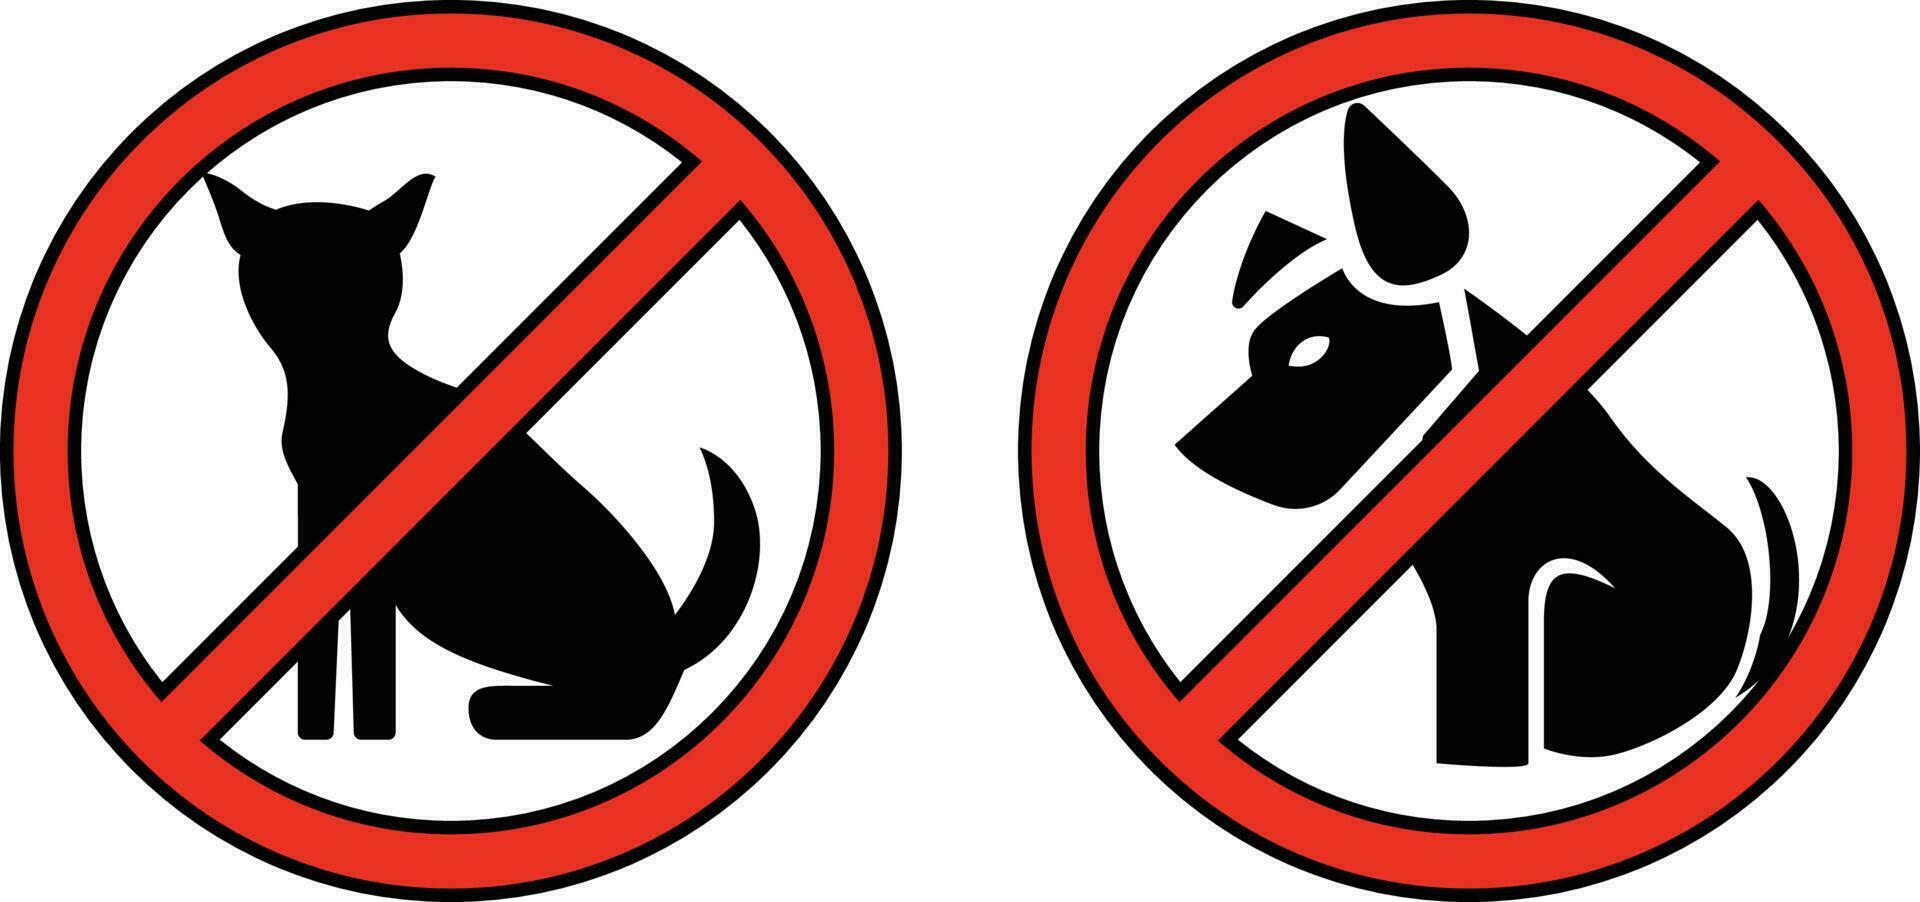 non animaux domestiques autorisé, non chats autorisé, faire chiens autorisé, non chats T-shirt concept vecteur illustration